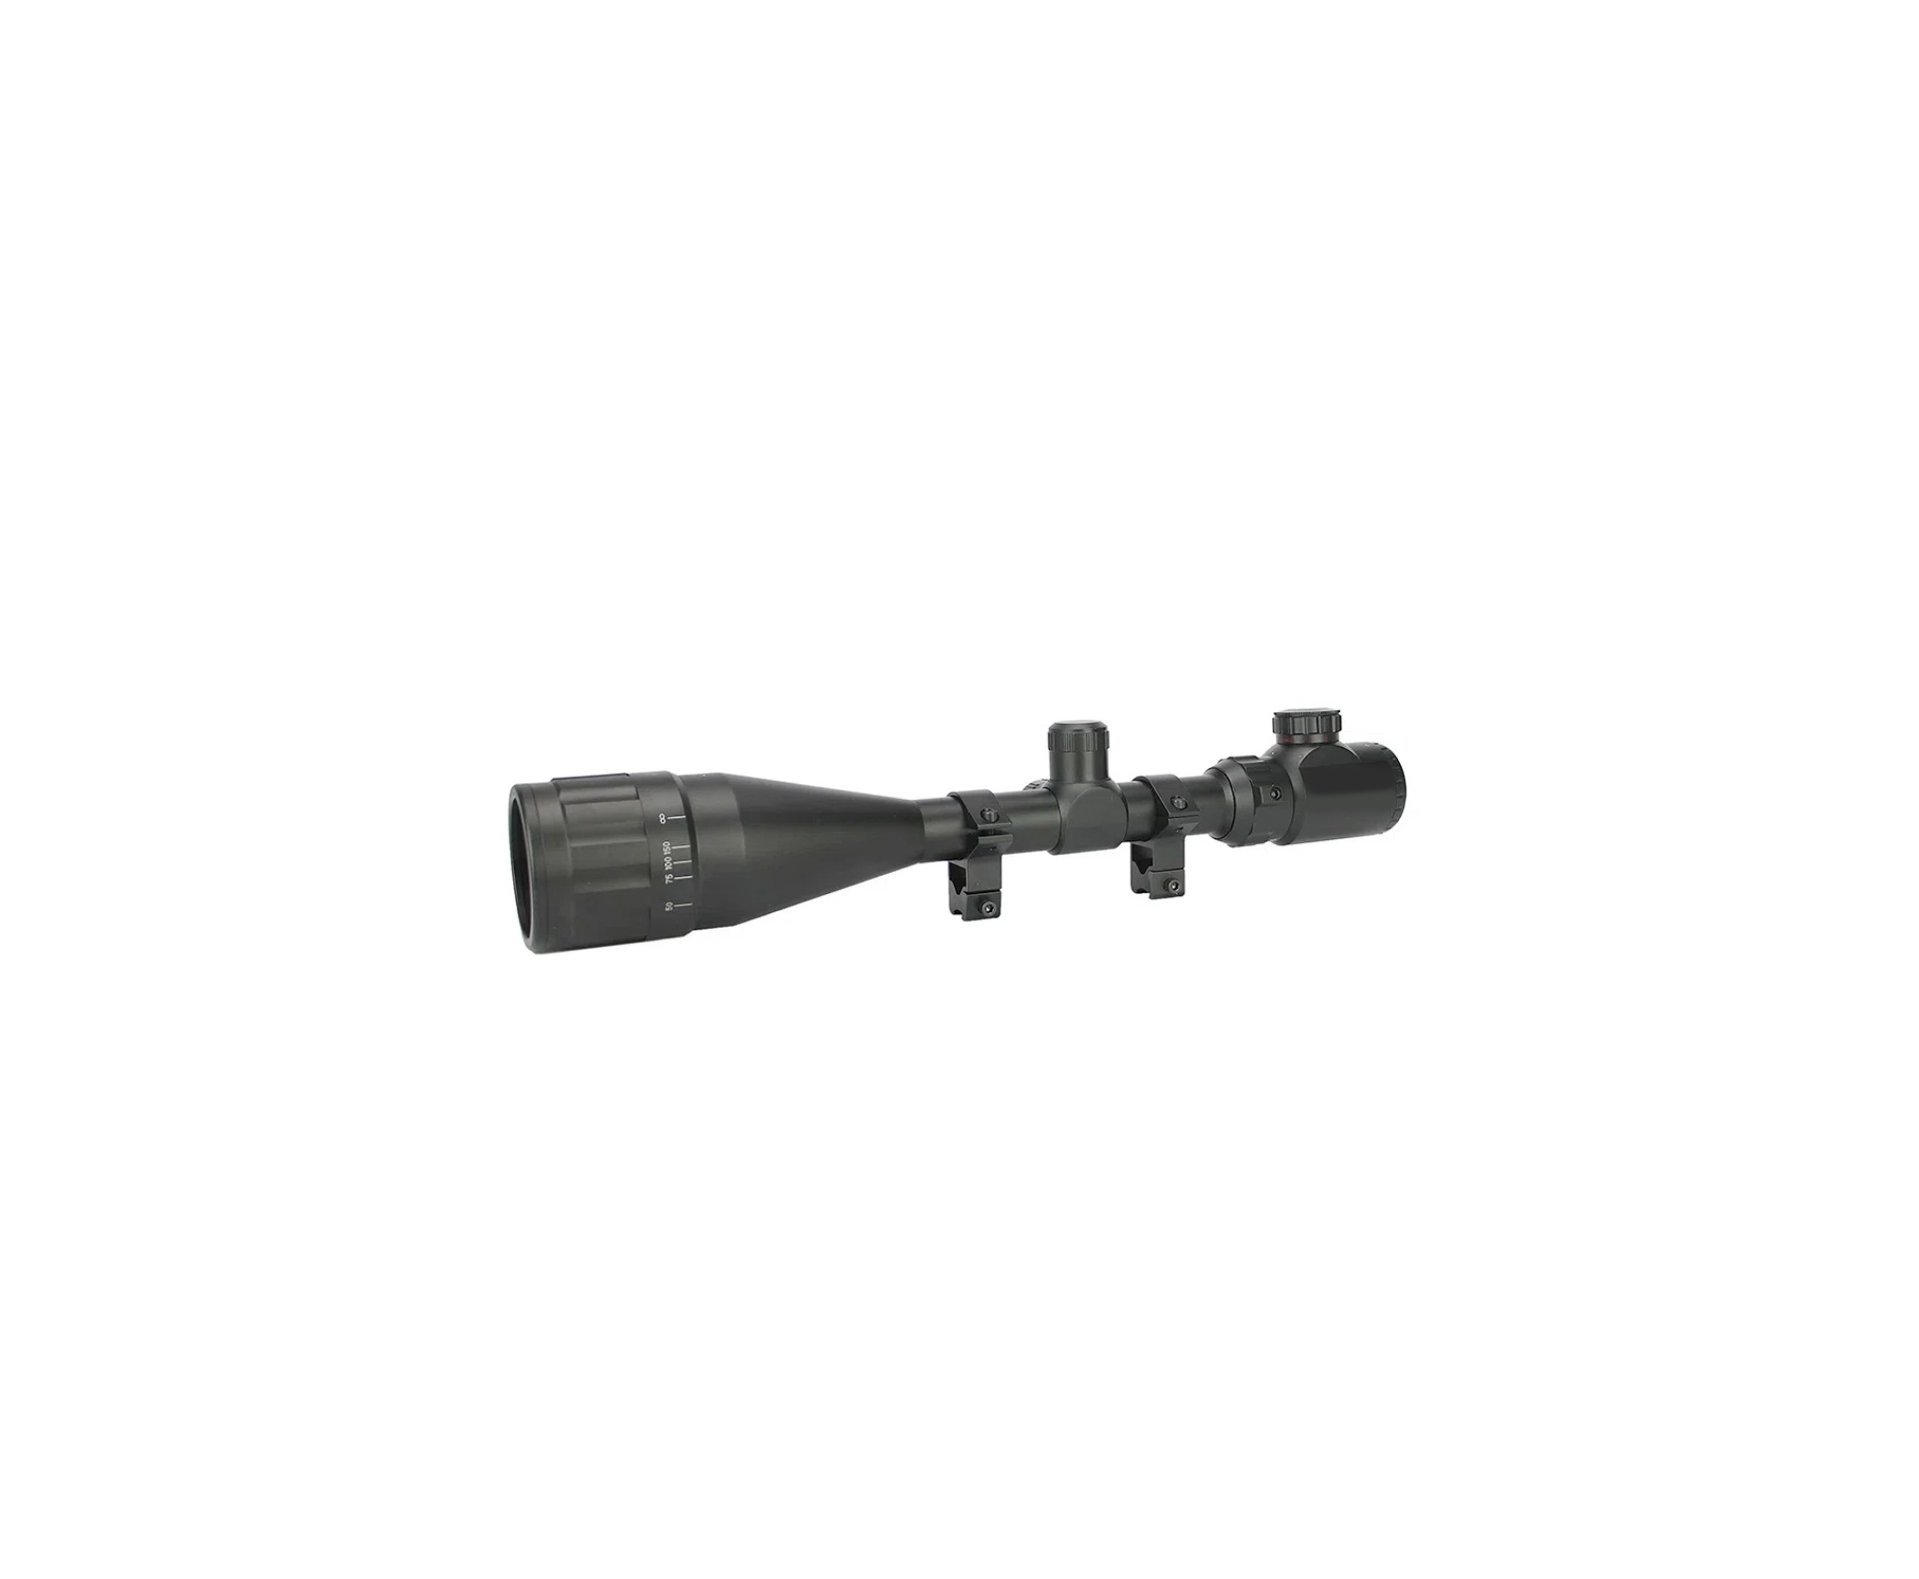 Carabina de Pressão PCP Artemis T-REX 5.5mm com Válvula Reguladora - Fixxar + Bomba + Luneta 4-16x50 + Mount 22mm